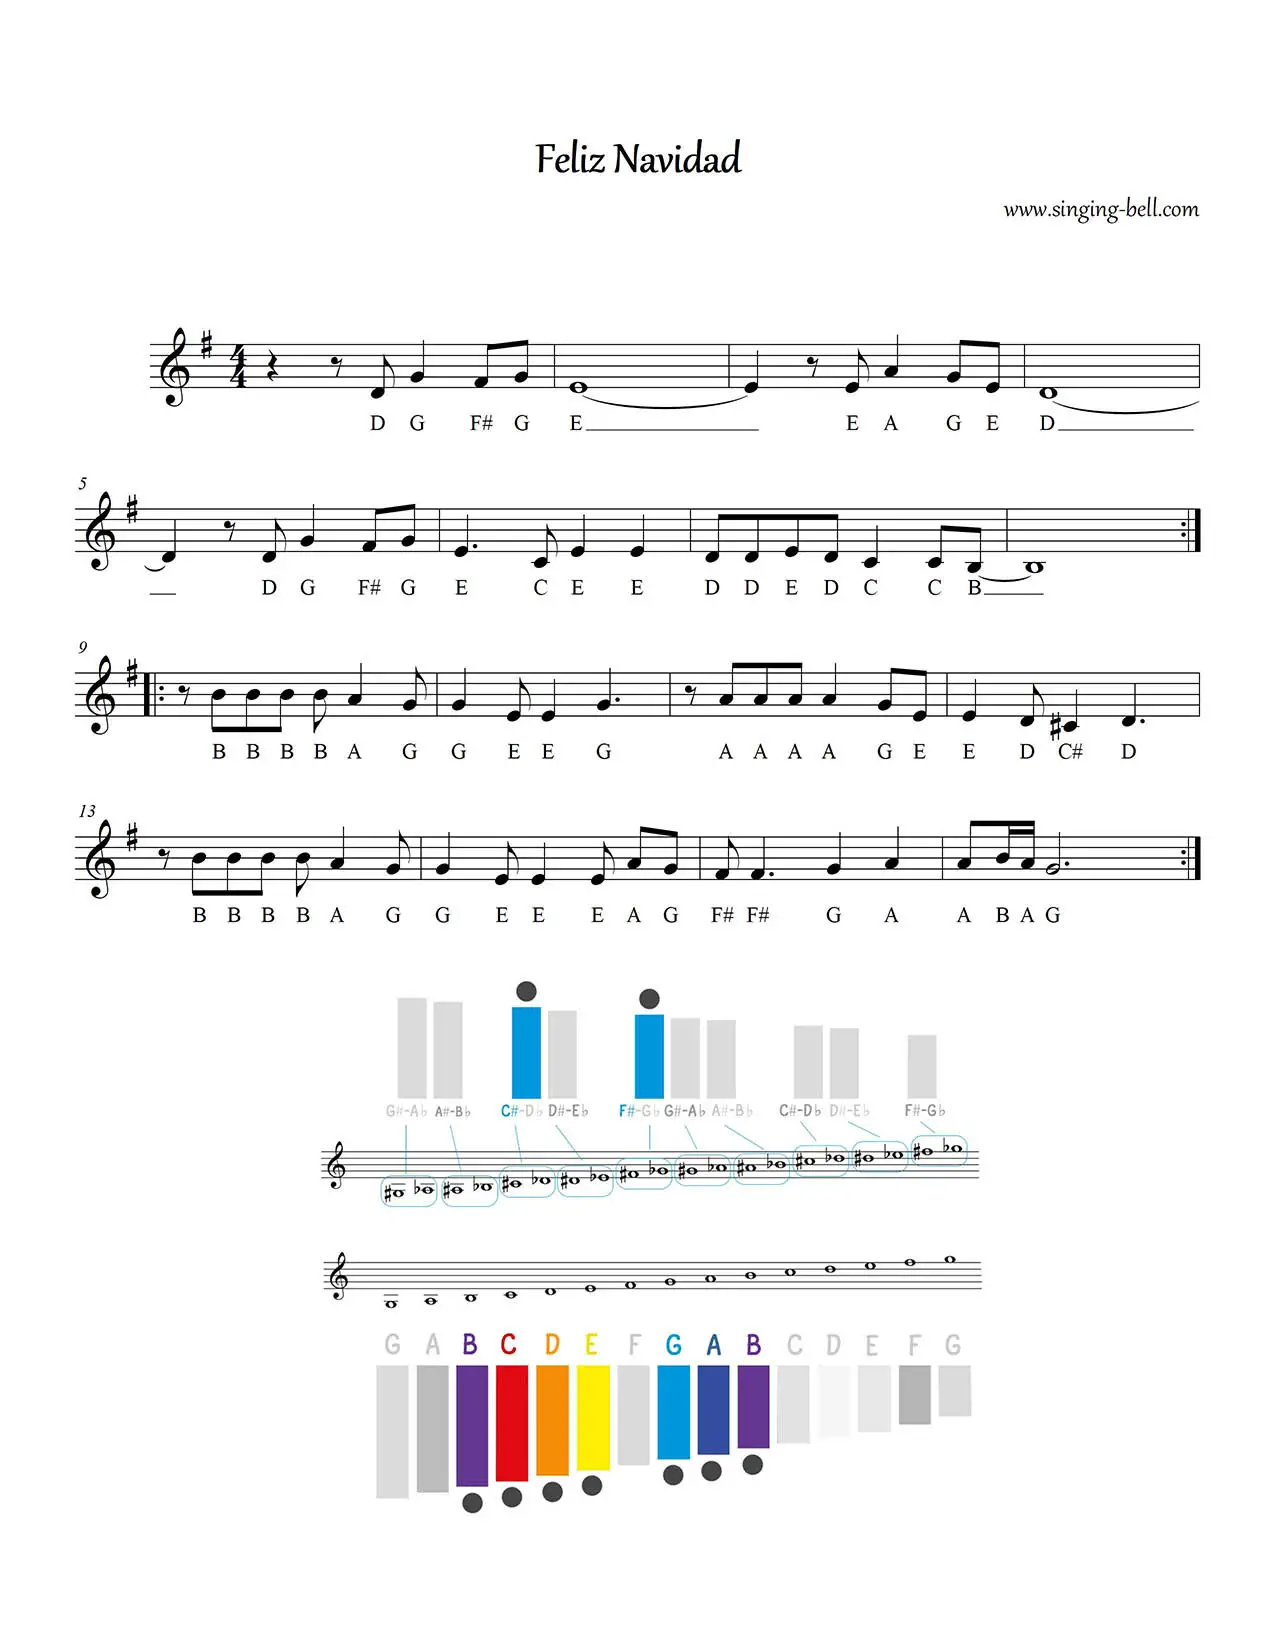 Feliz Navidad free glockenspiel sheet music notes pdf